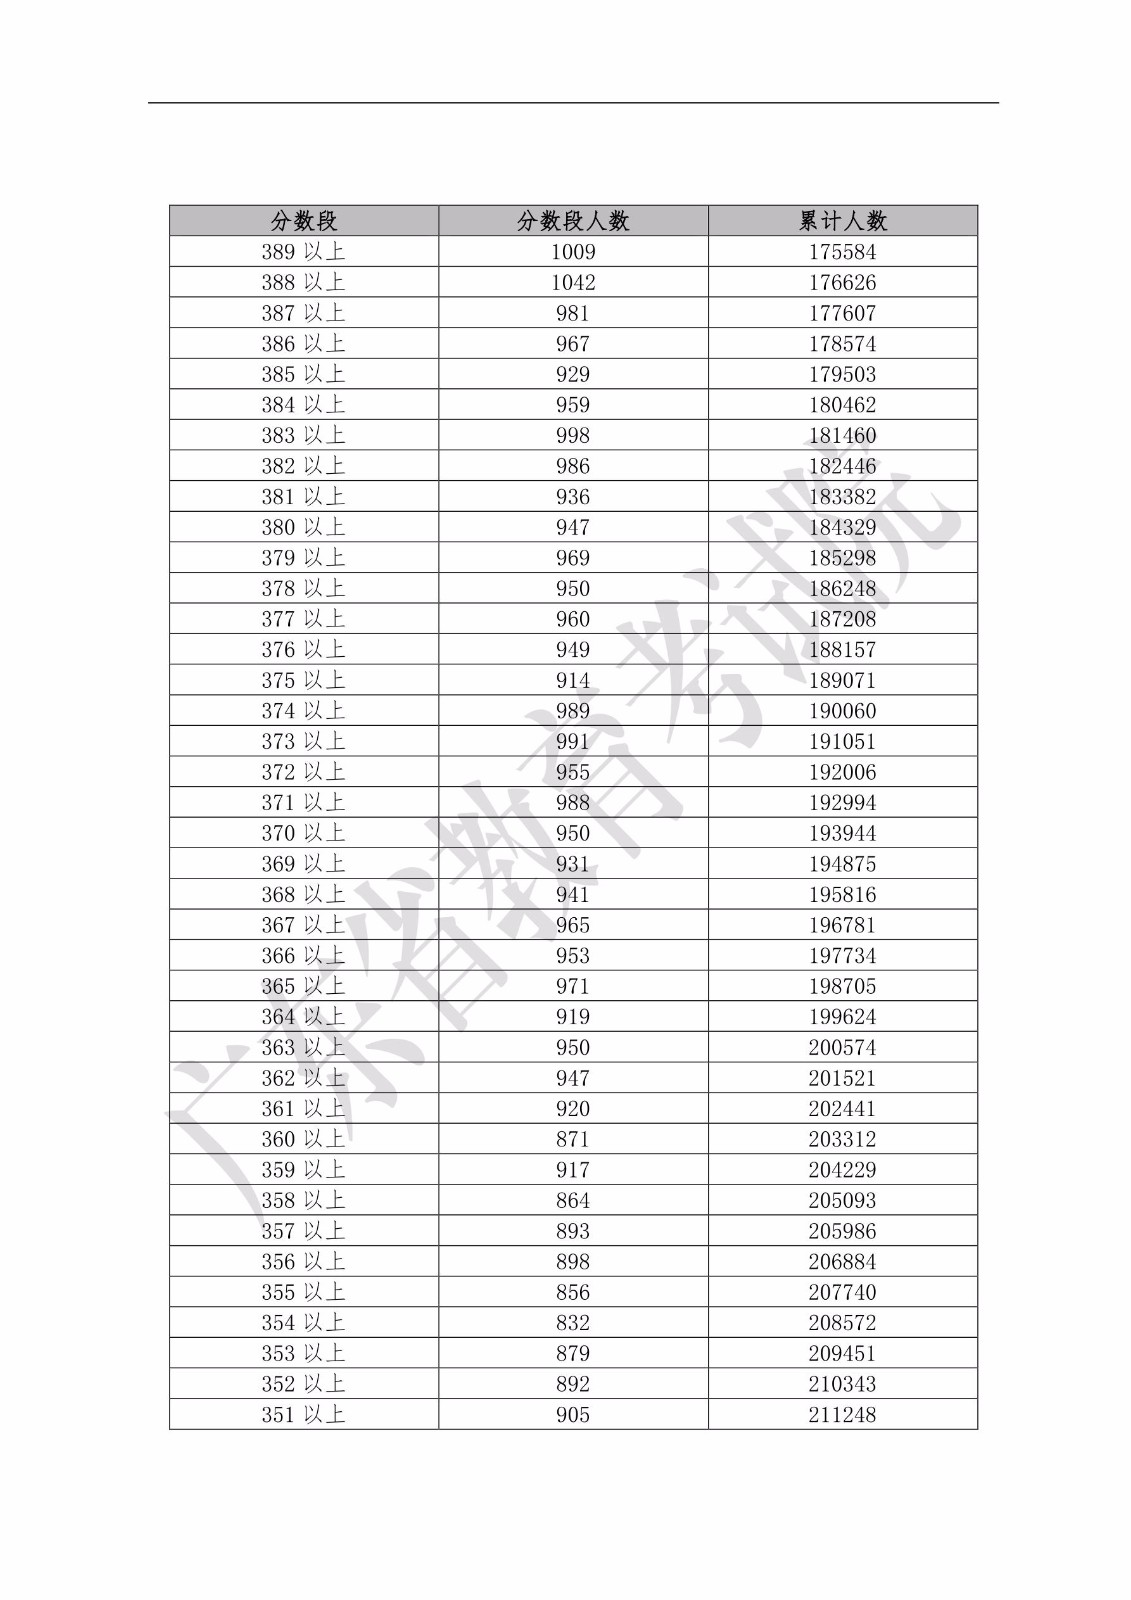 2019年广东省普通高考文科类分数段统计表